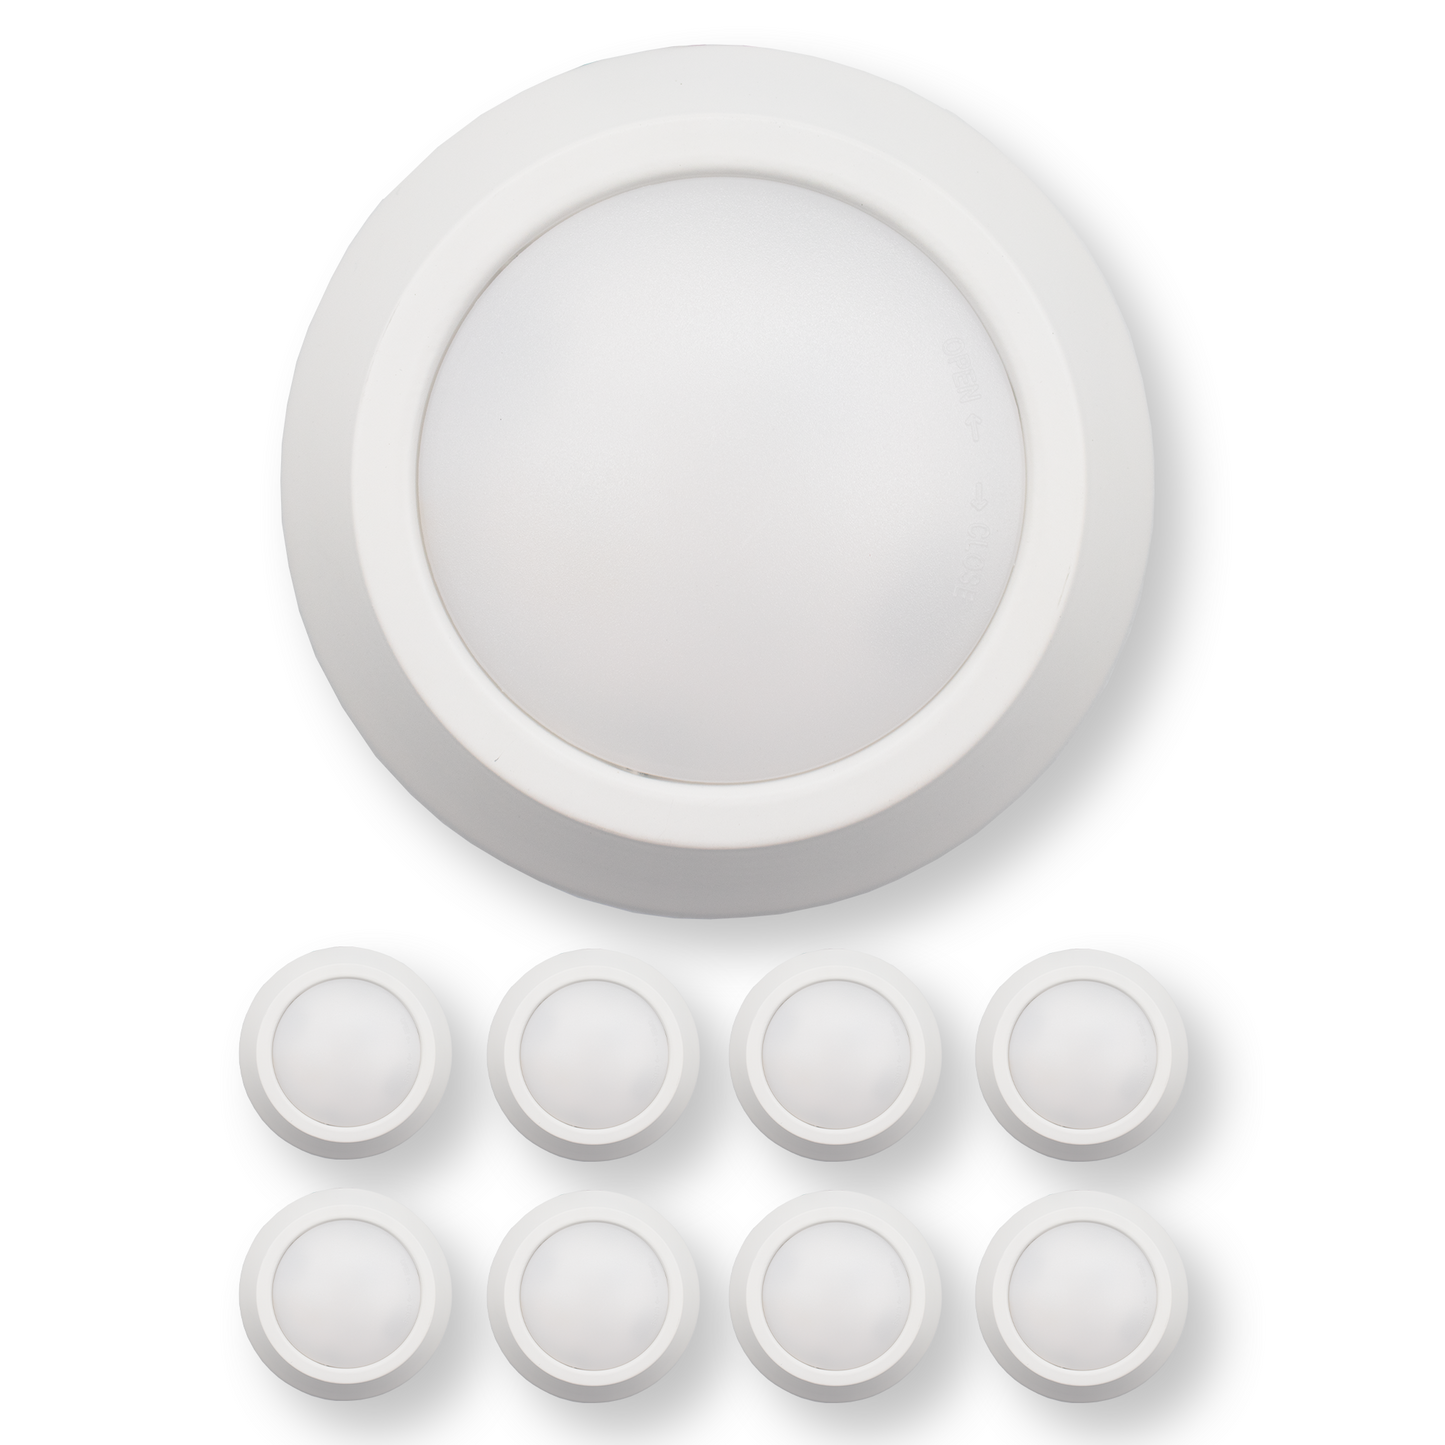 5 Inch LED Disk Light 12W - 3000K - 840Lumens - White (1 Pack, 2 Pack, 4 Pack, 6 Pack, 8 Pack)